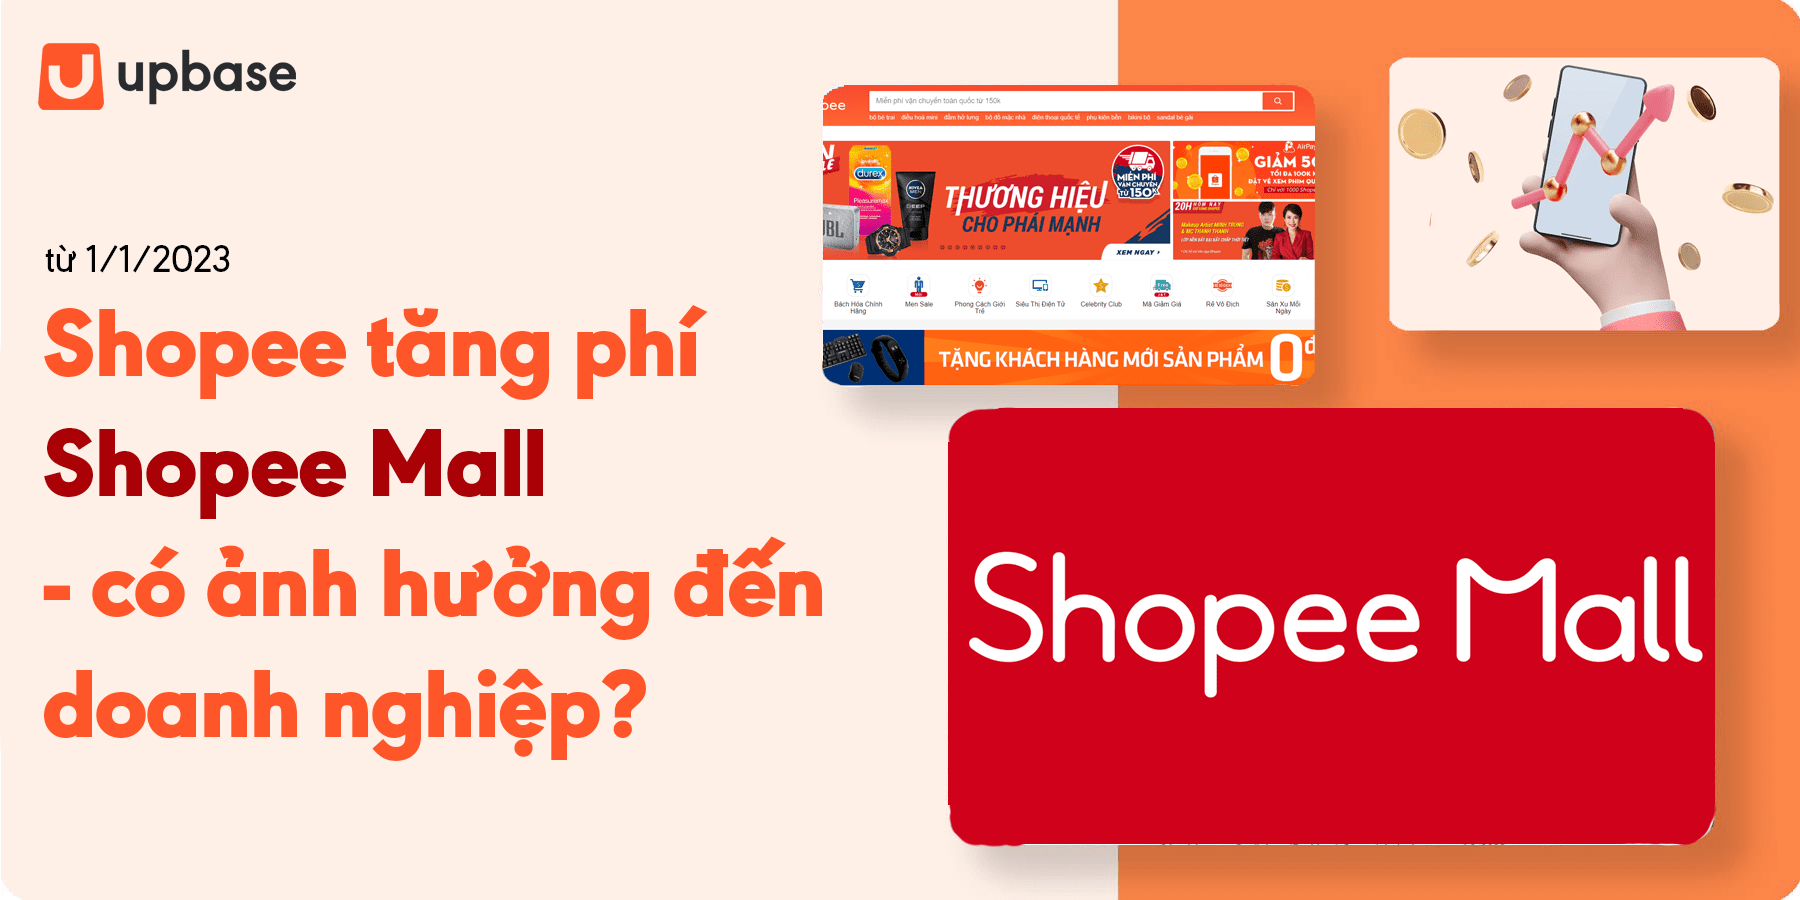 Shopee tăng phí Shopee Mall, có ảnh hưởng đến Doanh nghiệp?